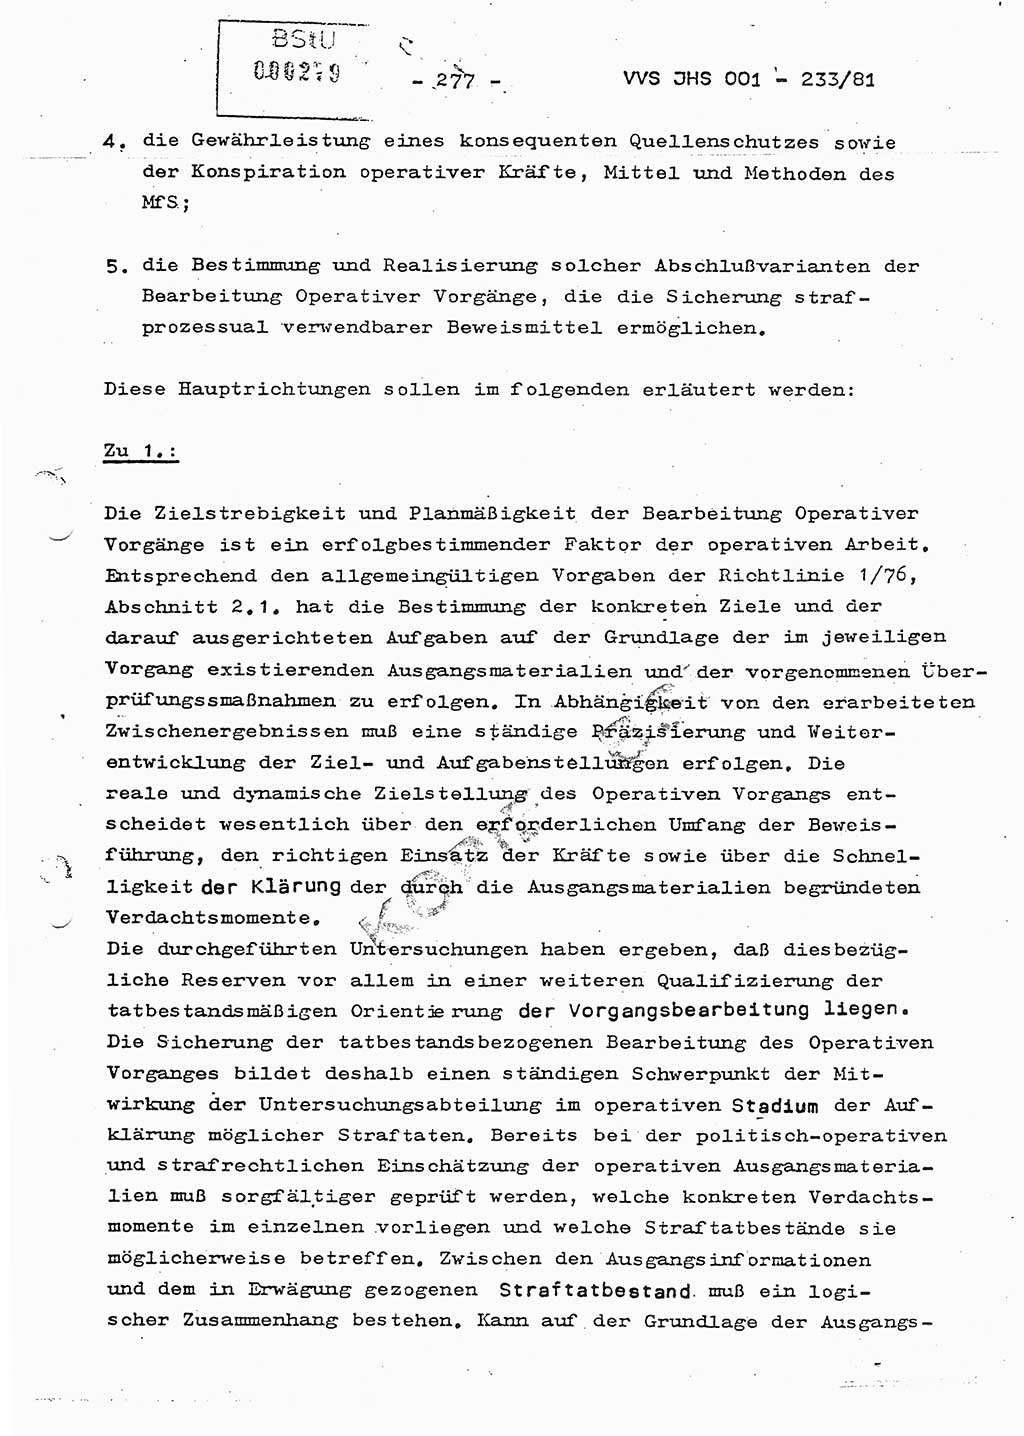 Dissertation Oberstleutnant Horst Zank (JHS), Oberstleutnant Dr. Karl-Heinz Knoblauch (JHS), Oberstleutnant Gustav-Adolf Kowalewski (HA Ⅸ), Oberstleutnant Wolfgang Plötner (HA Ⅸ), Ministerium für Staatssicherheit (MfS) [Deutsche Demokratische Republik (DDR)], Juristische Hochschule (JHS), Vertrauliche Verschlußsache (VVS) o001-233/81, Potsdam 1981, Blatt 277 (Diss. MfS DDR JHS VVS o001-233/81 1981, Bl. 277)